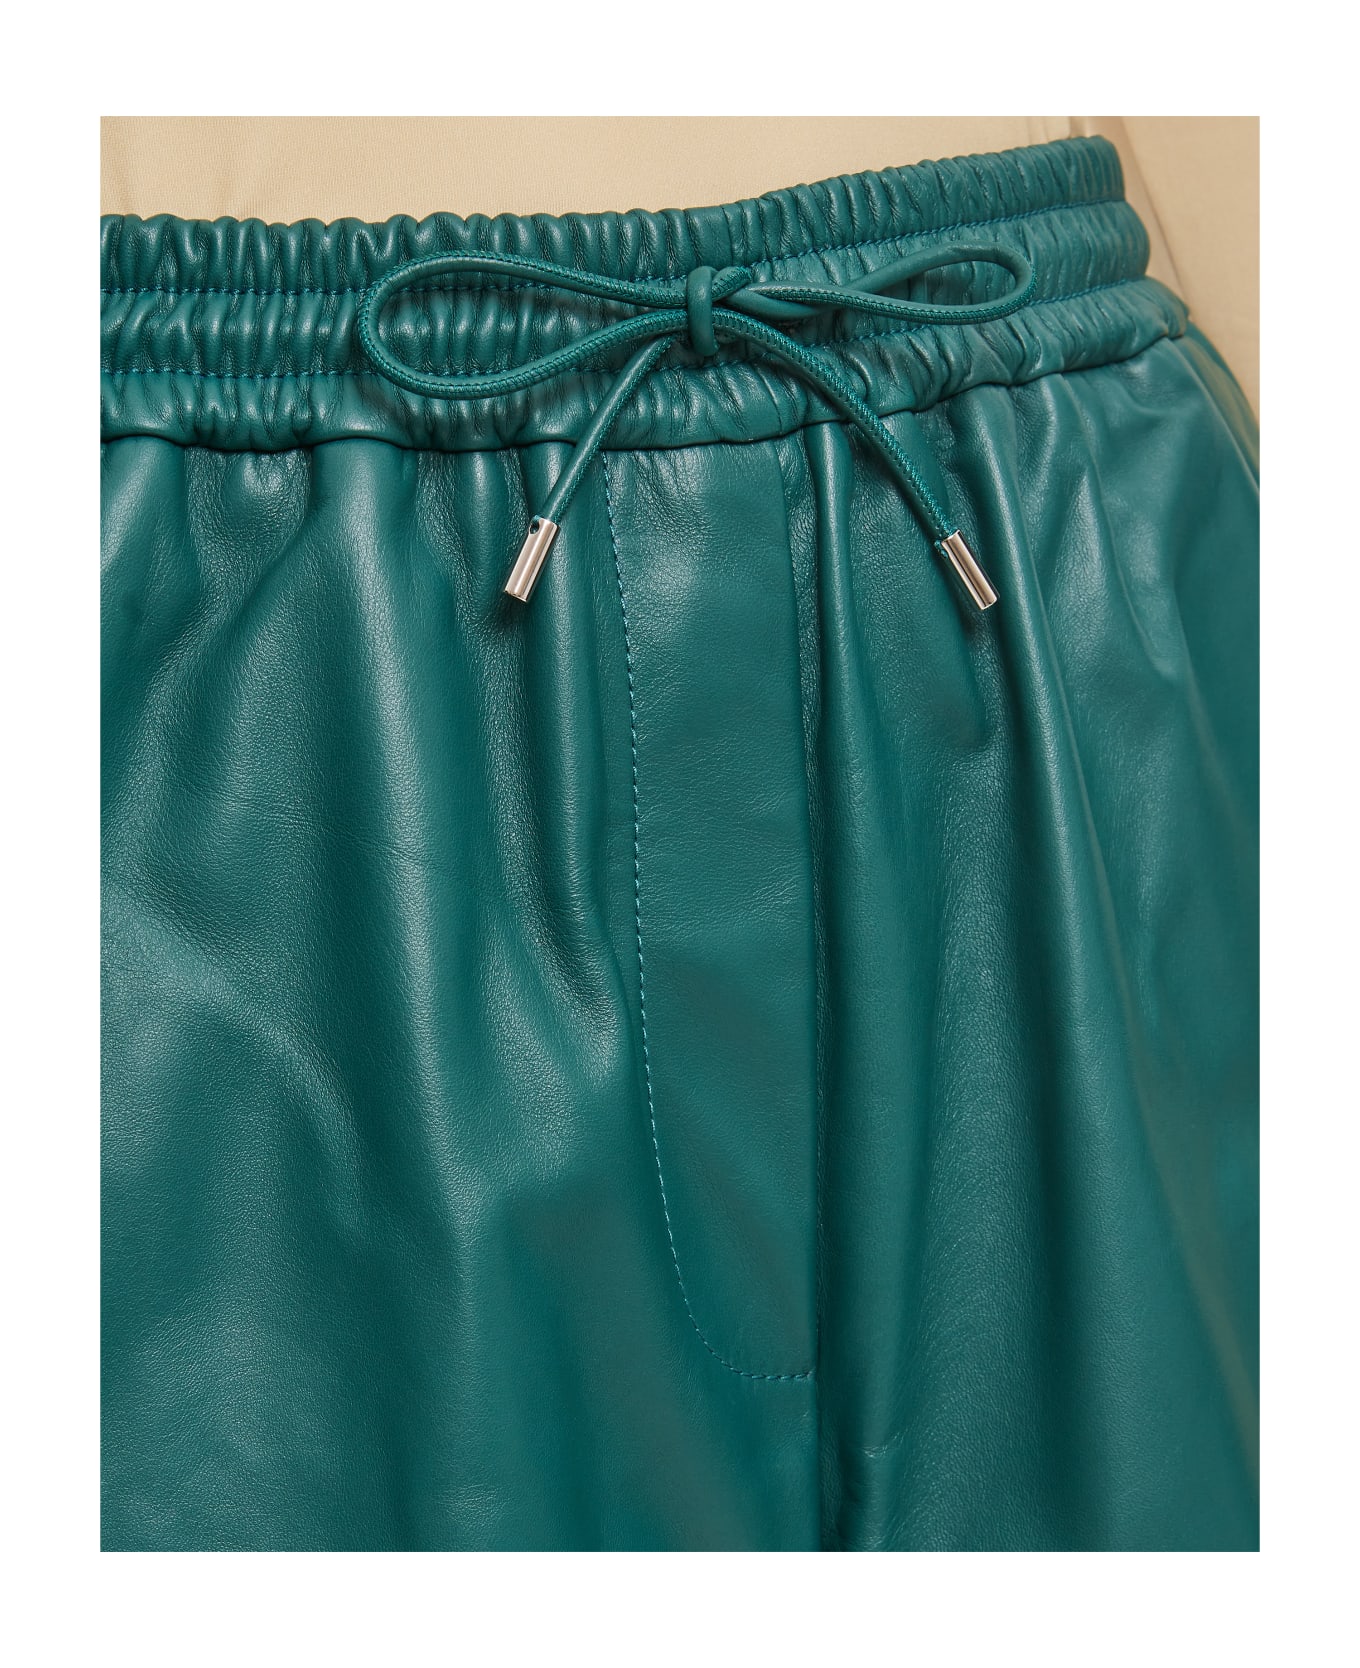 Loewe Elasticated Shorts - Green